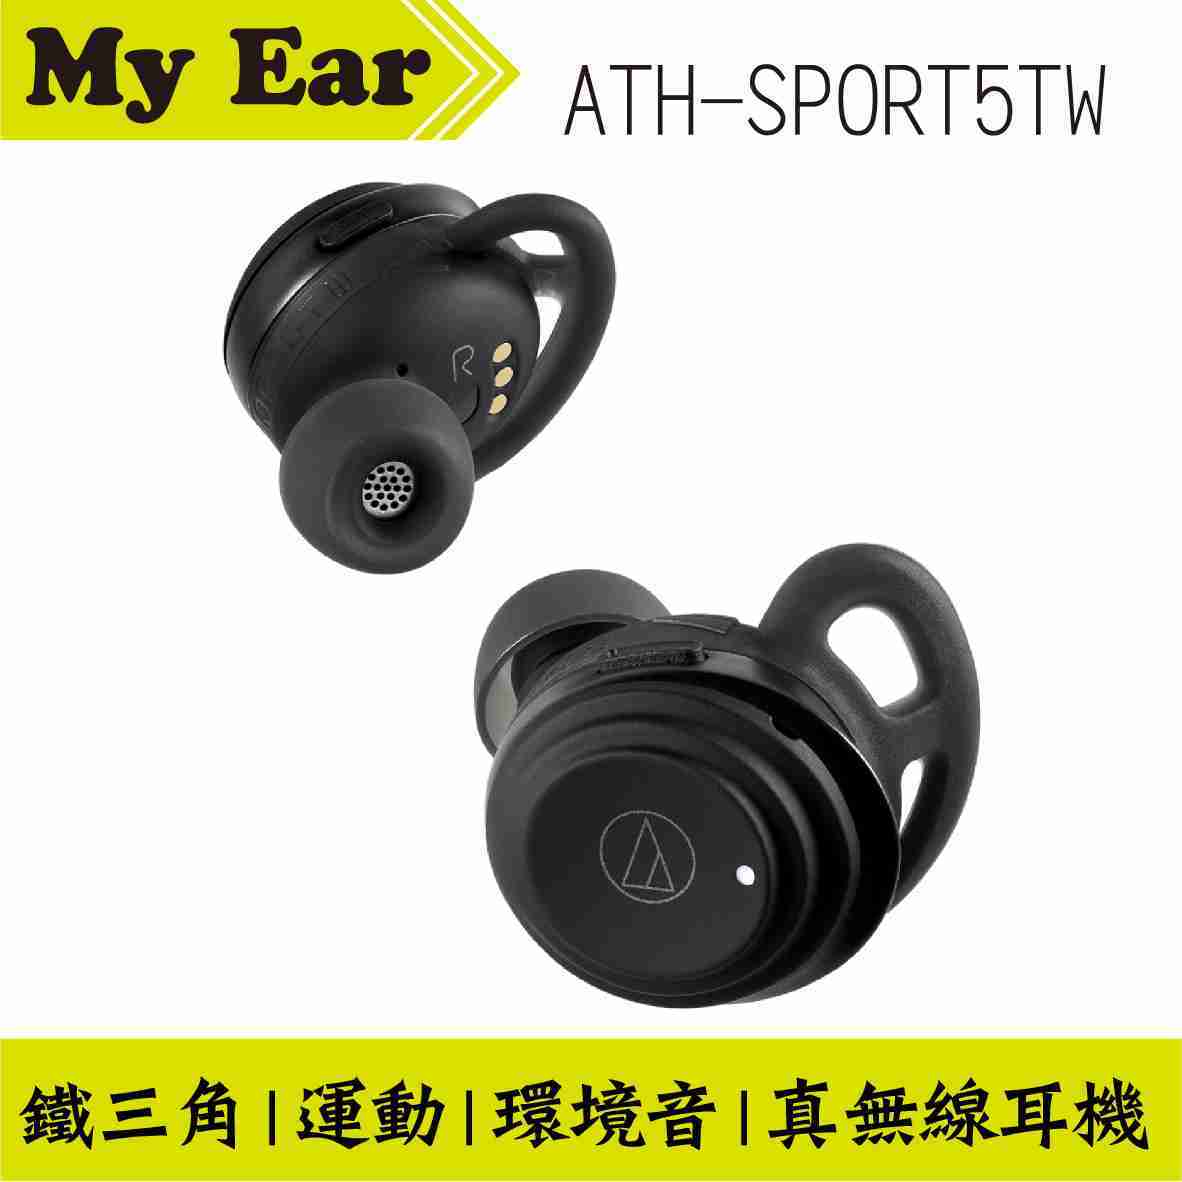 鐵三角 ATH-SPORT5TW 新款 真無線 耳機 無線 藍芽耳機 運動耳機 | My Ear 耳機專門店